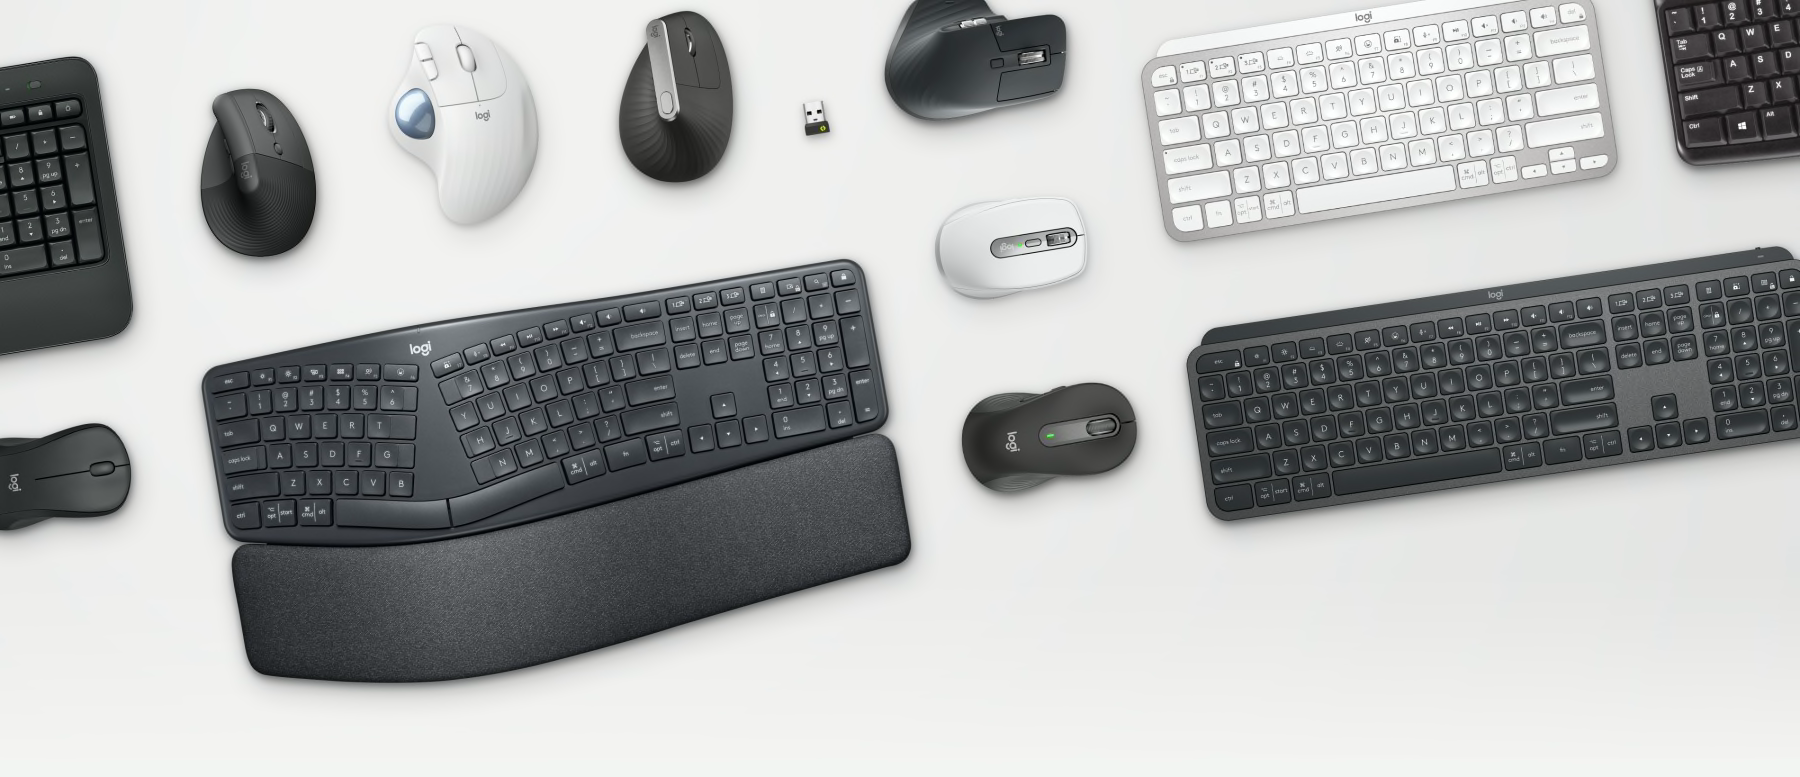 Zakelijke tools: MX-muizen en -toetsenborden op tafel